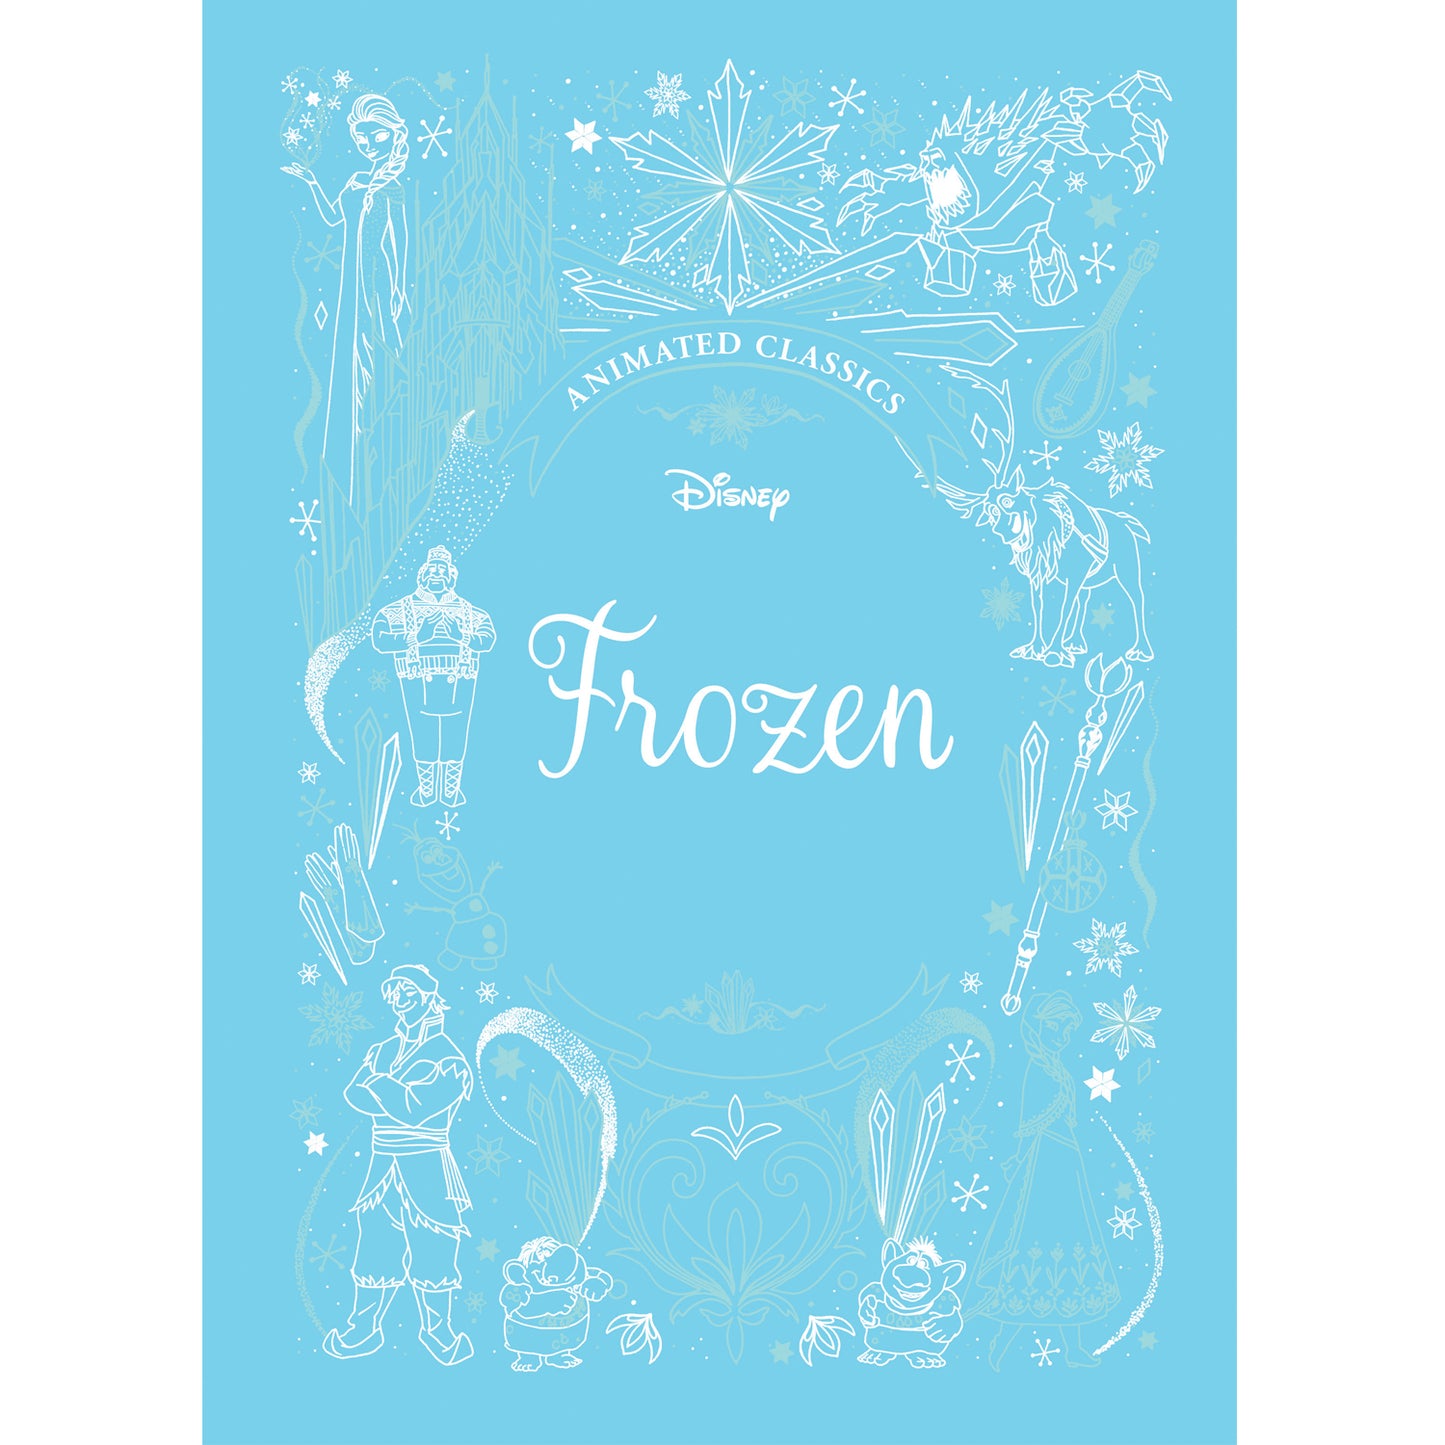 Disney Frozen Animated Classics